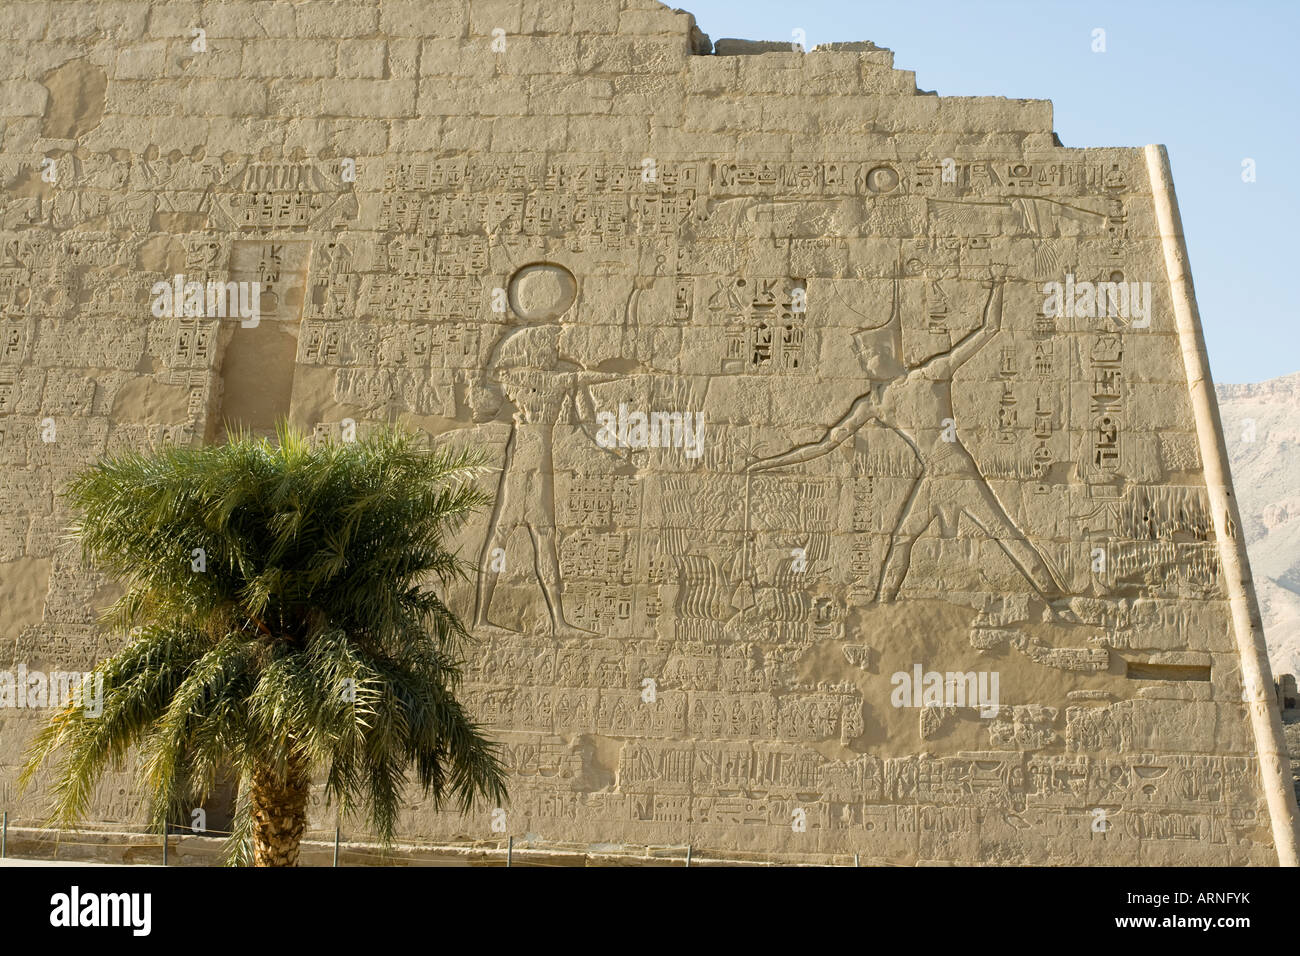 Retrato de faraón y dios Amon Ra en la entrada del templo de Medinat Habu en Luxor orilla occidental del valle del Nilo Egipto Foto de stock